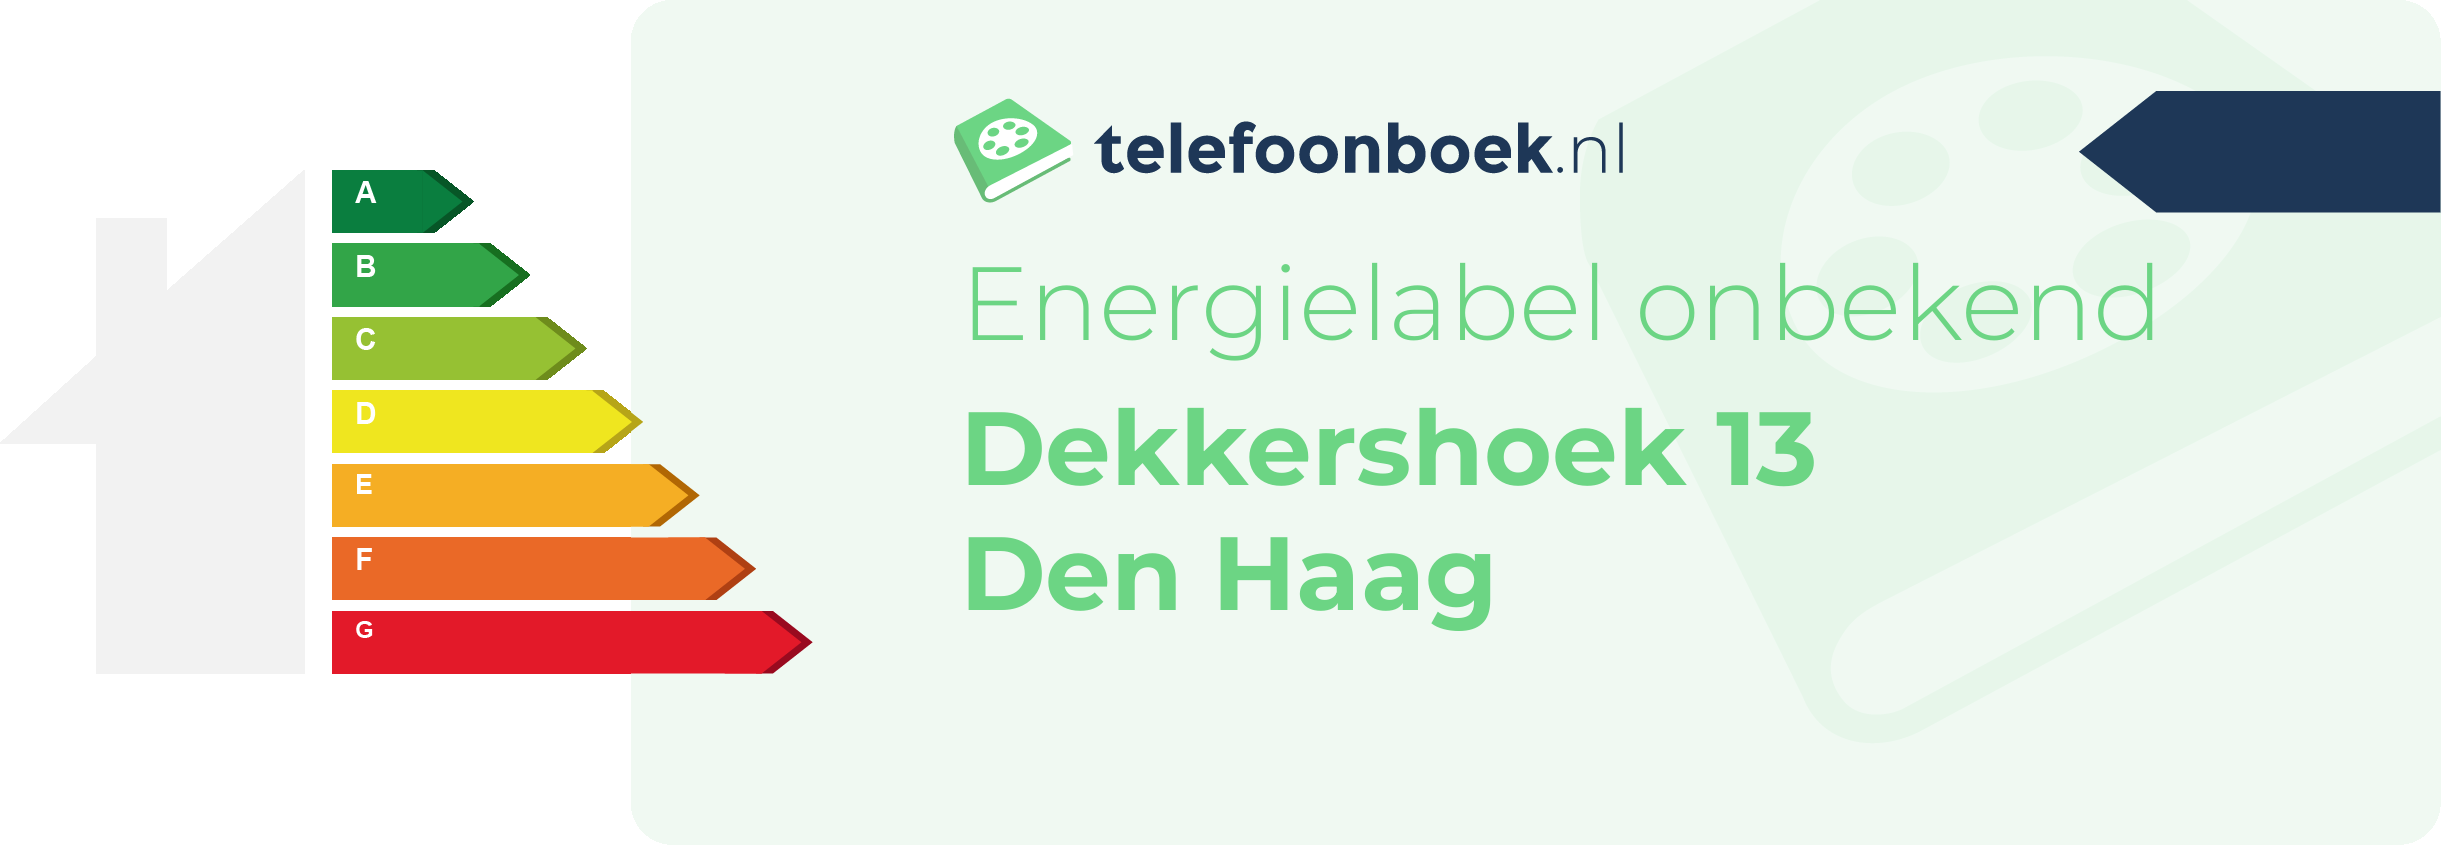 Energielabel Dekkershoek 13 Den Haag